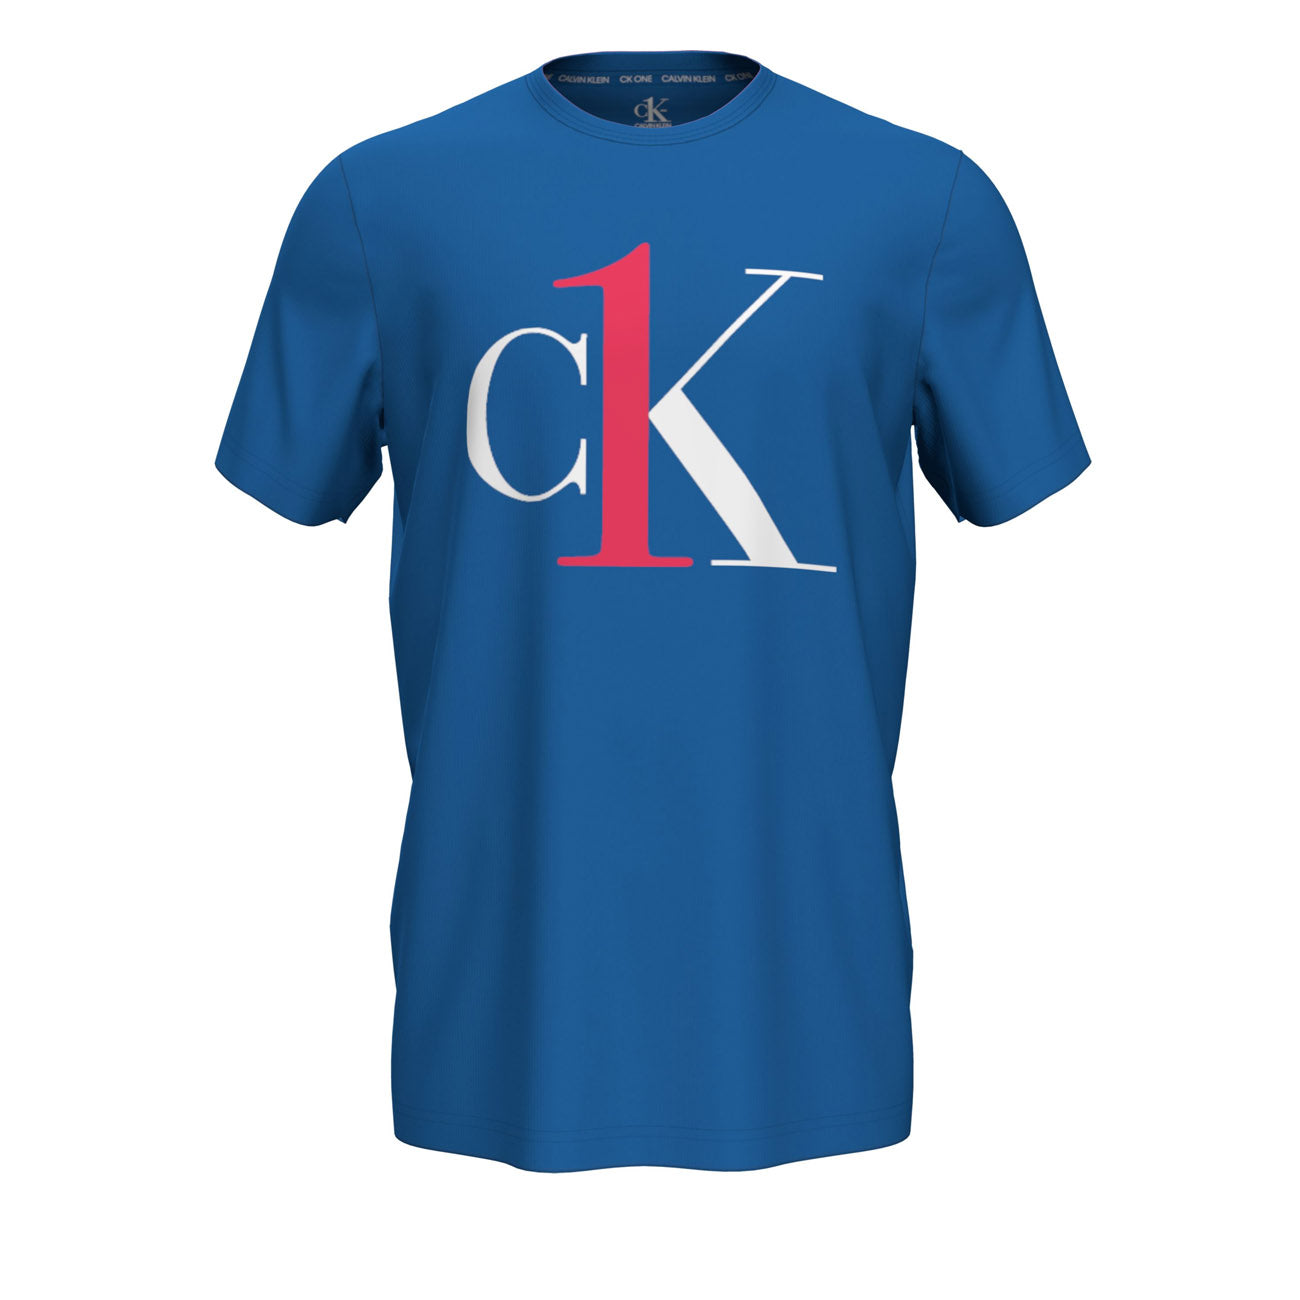 Calvin Klein One Graphic T-Shirt Herren S/S Crew Neck Kettle Blue Bright Mulberry